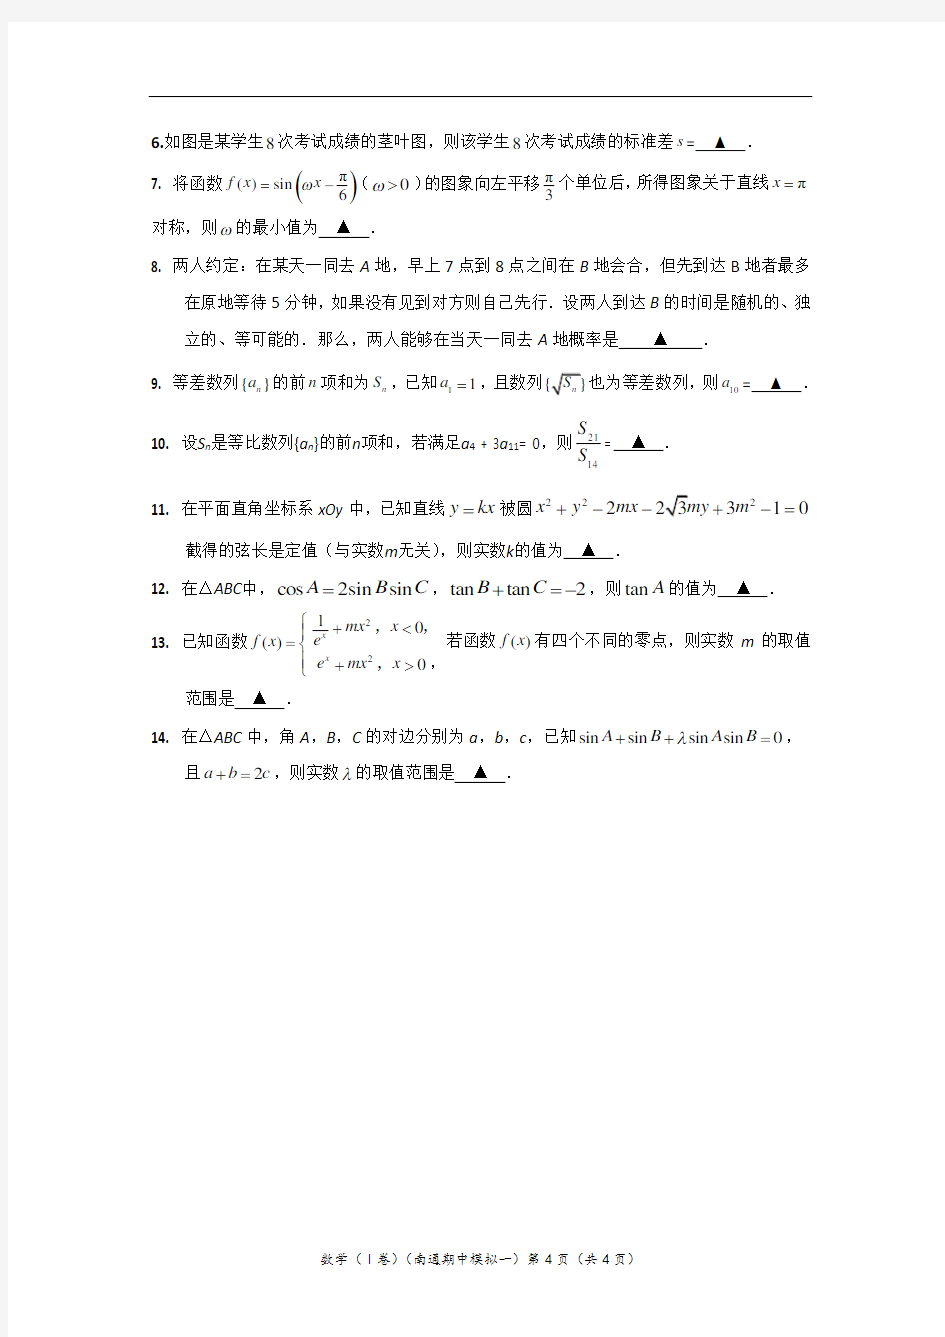 数学Ⅰ卷试题2020届江苏省南通市高三年级期中第一次模拟考试  数学试题含附加题